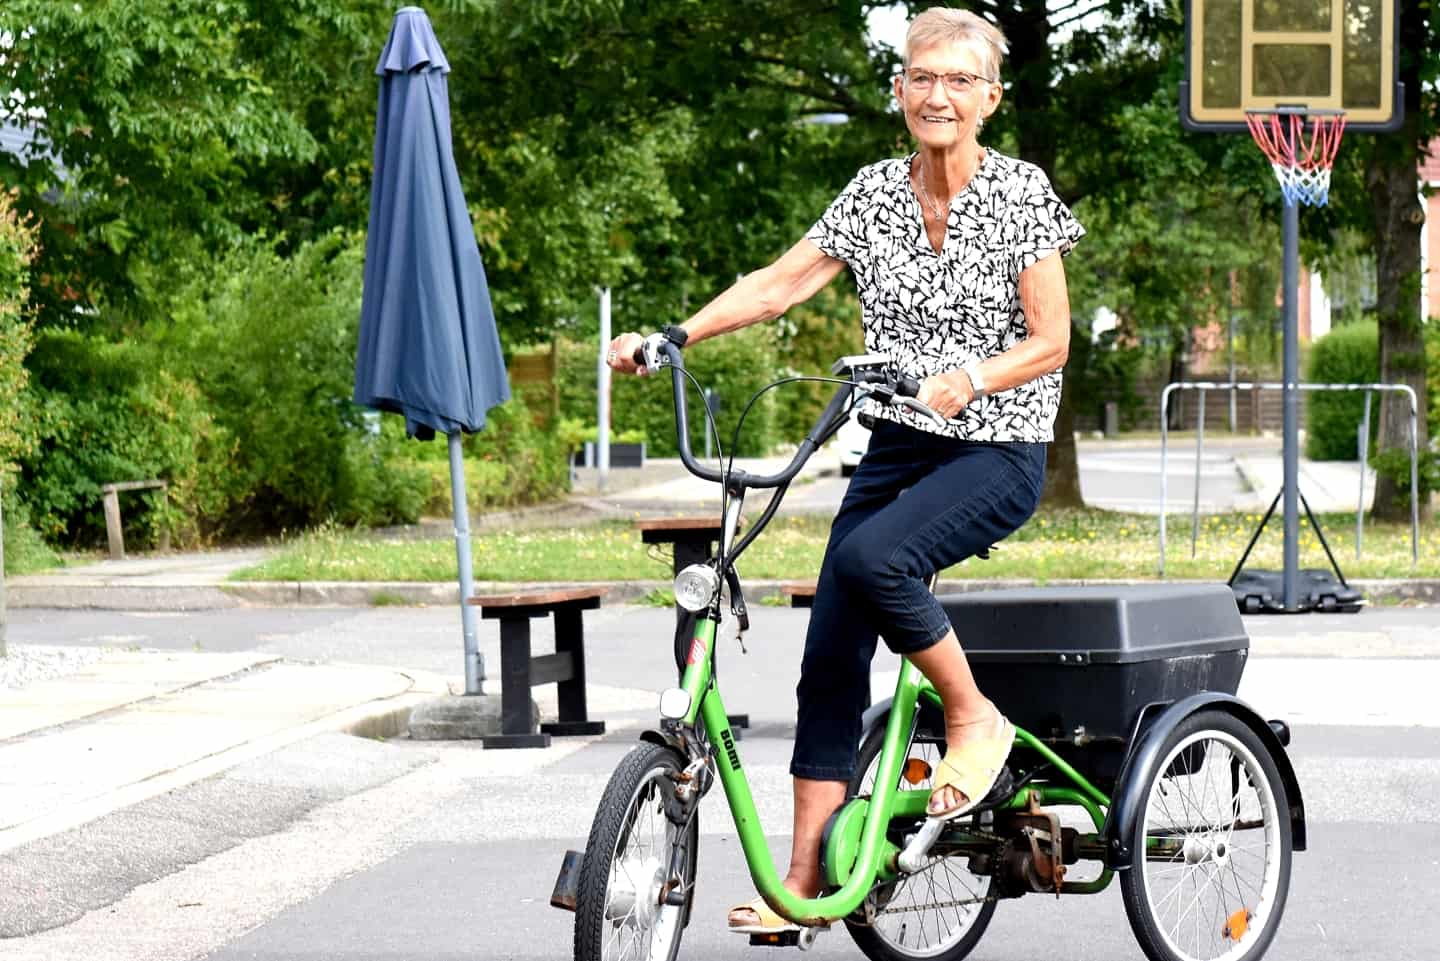 højttaler ekspertise MP Det er bedst for Gerda med en cykel - men den kan hun ikke få: Her er det  store problem, som bør blive løst | jv.dk